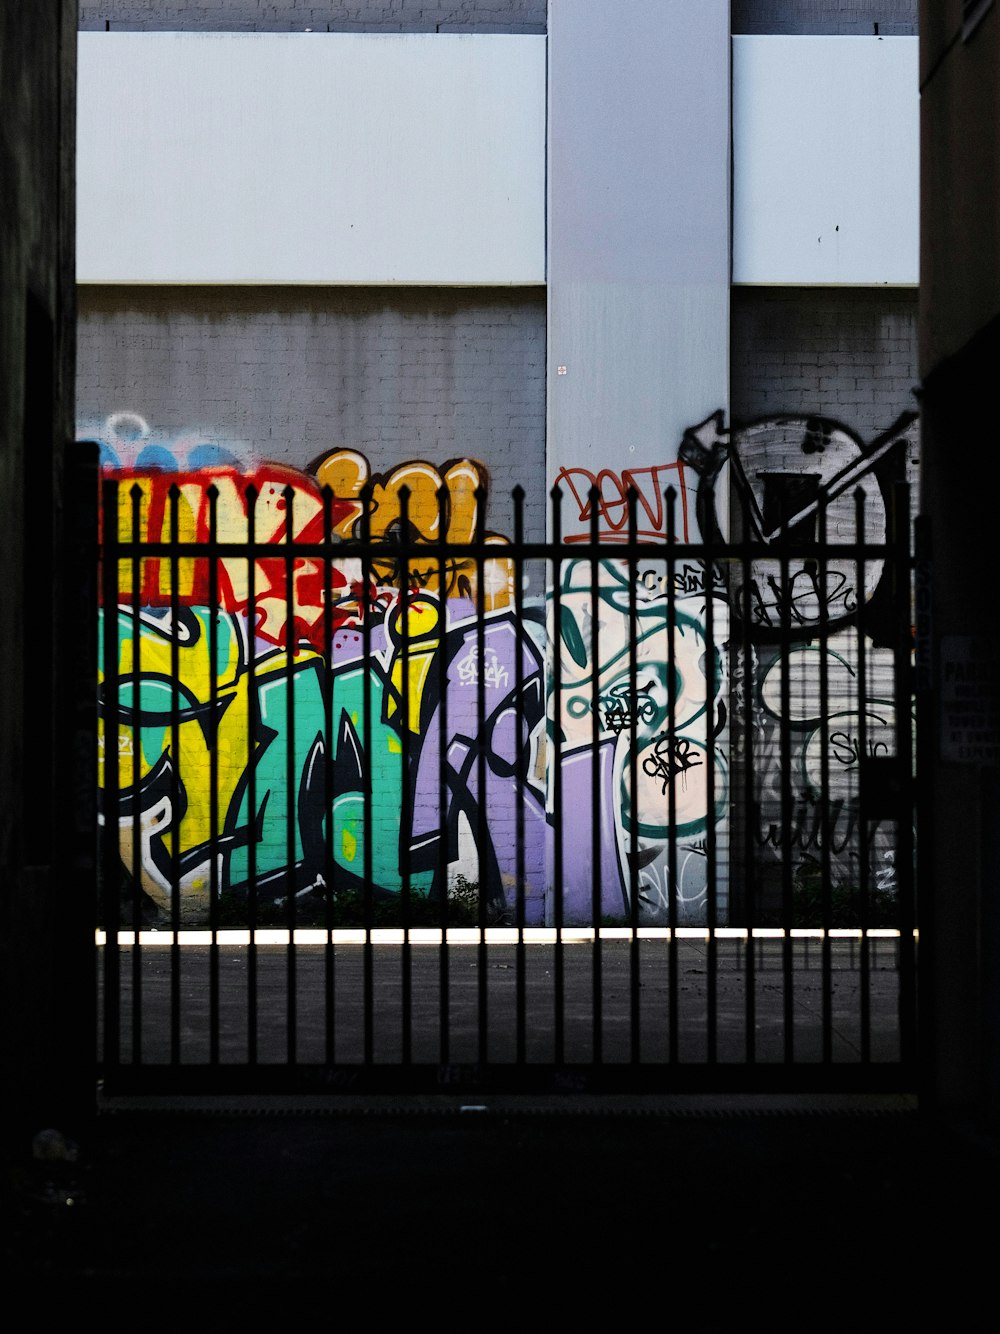 black metal fence near graffiti filled wall